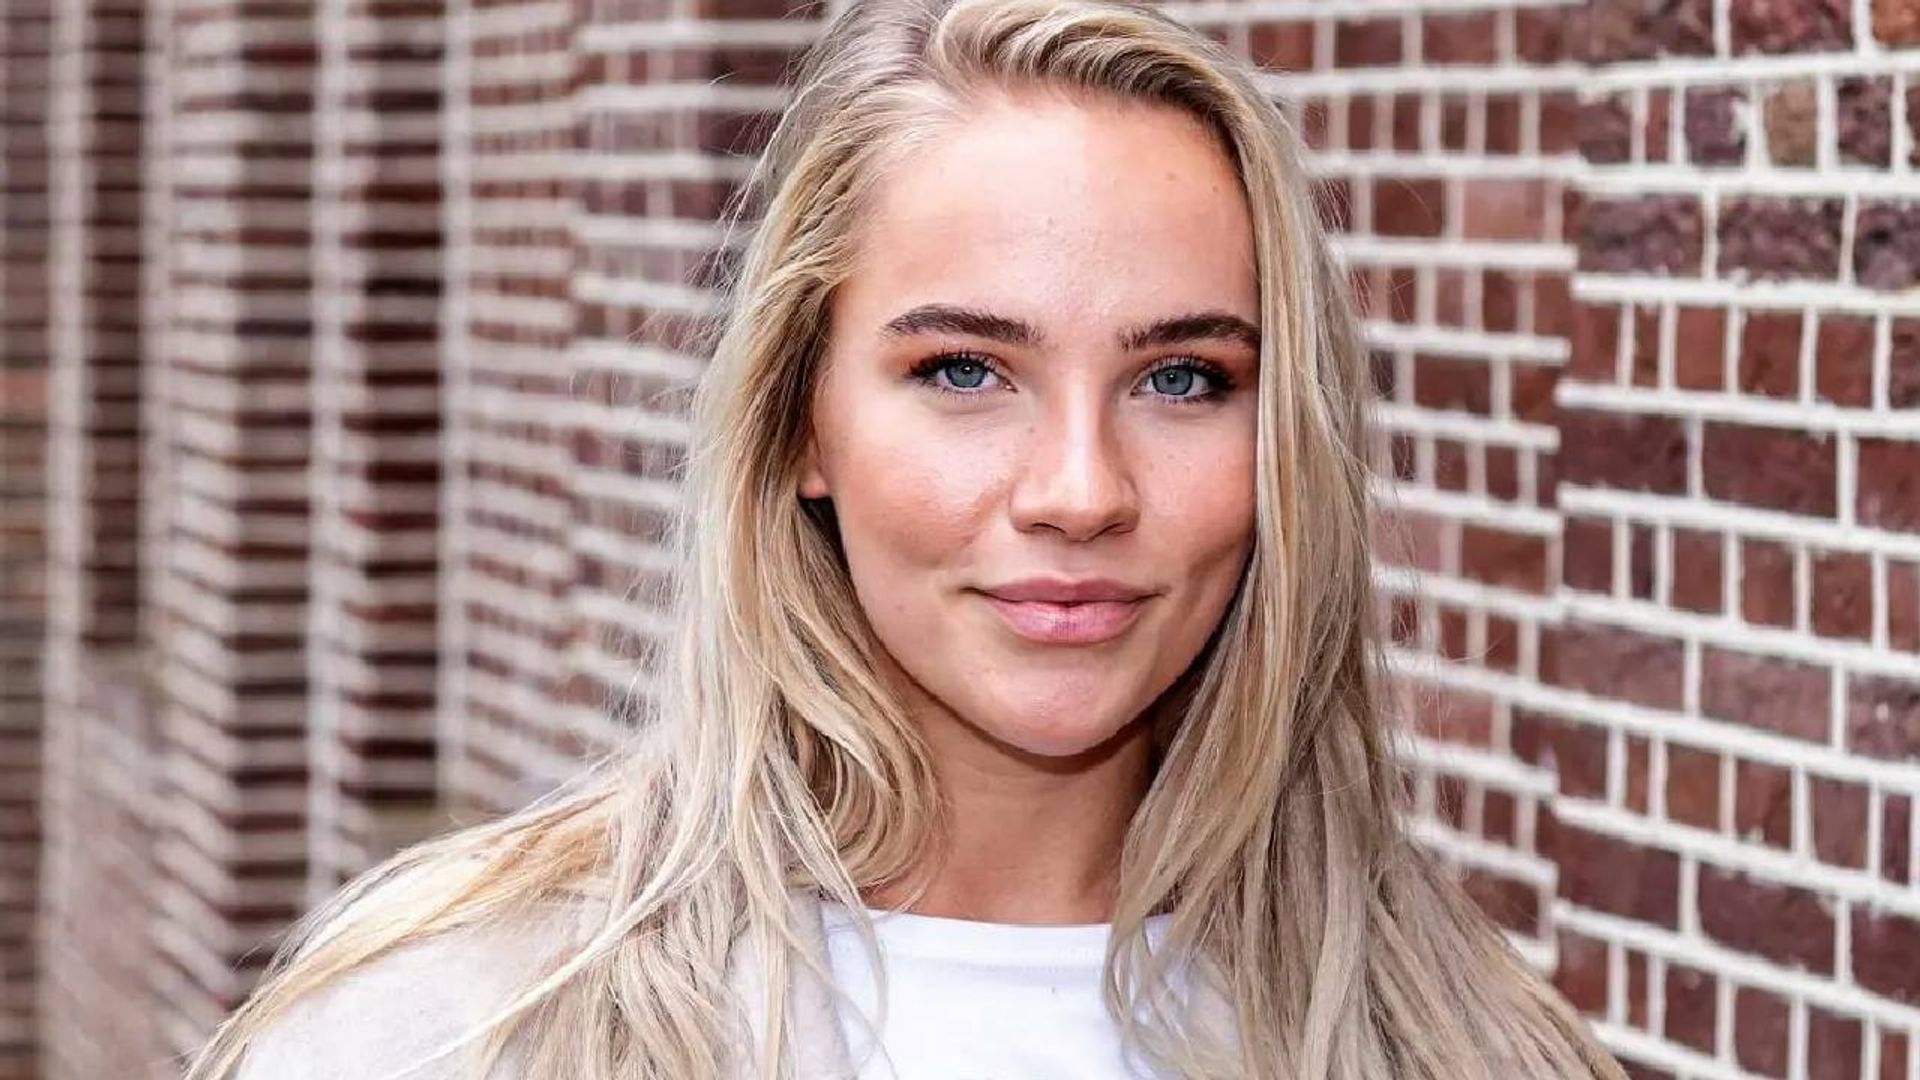 Juultje Tieleman weer in lingerie op Instagram